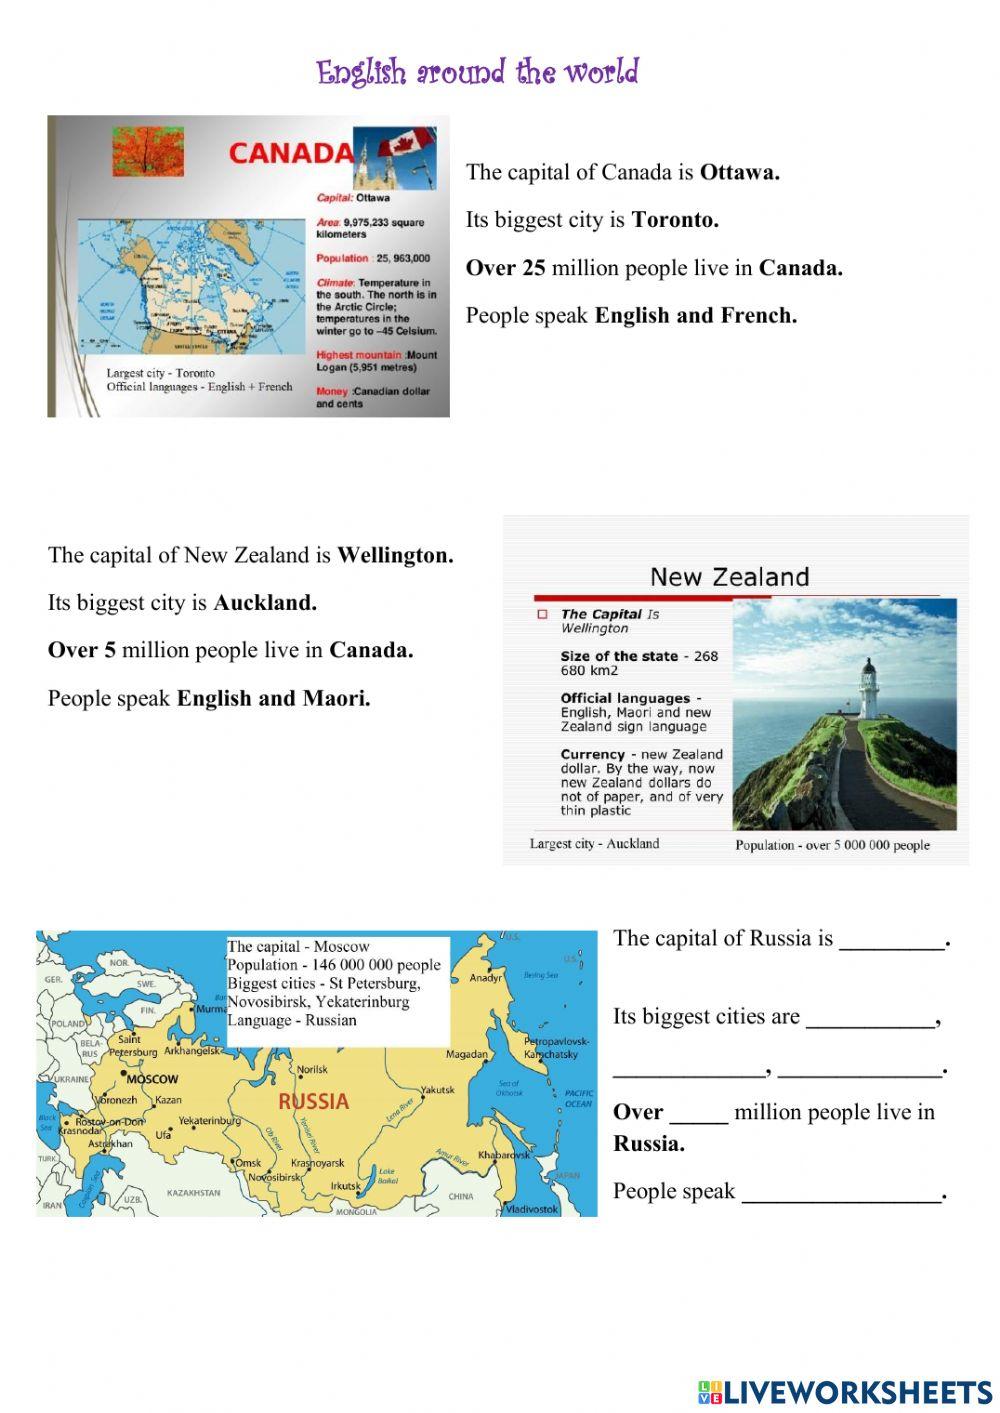 English Around the World